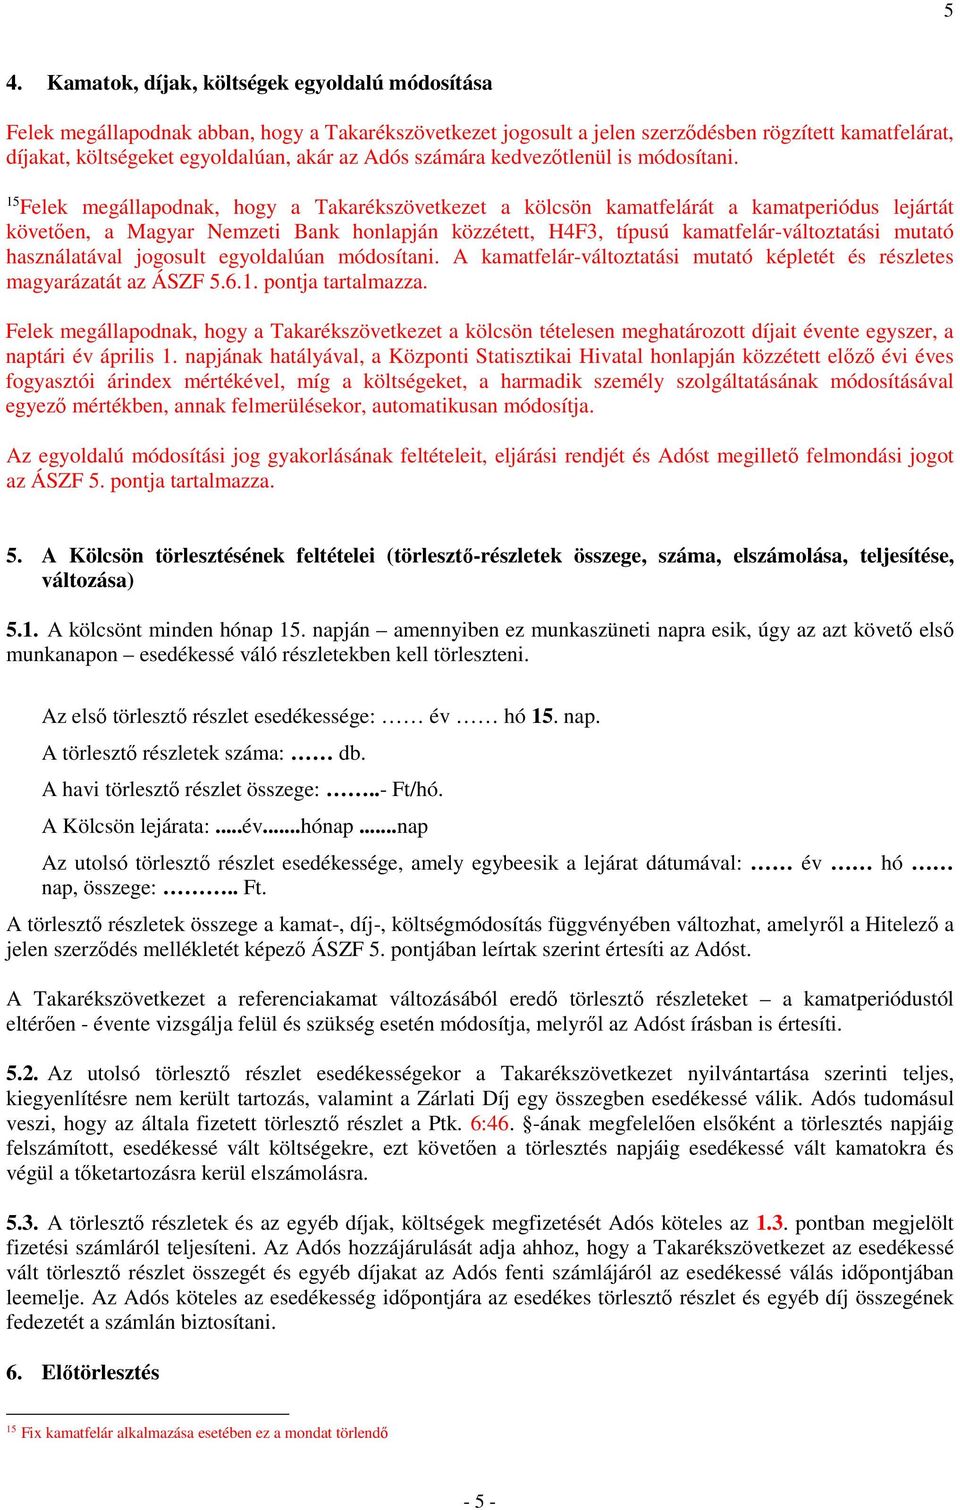 15 Felek megállapodnak, hogy a Takarékszövetkezet a kölcsön kamatfelárát a kamatperiódus lejártát követően, a Magyar Nemzeti Bank honlapján közzétett, H4F3, típusú kamatfelár-változtatási mutató